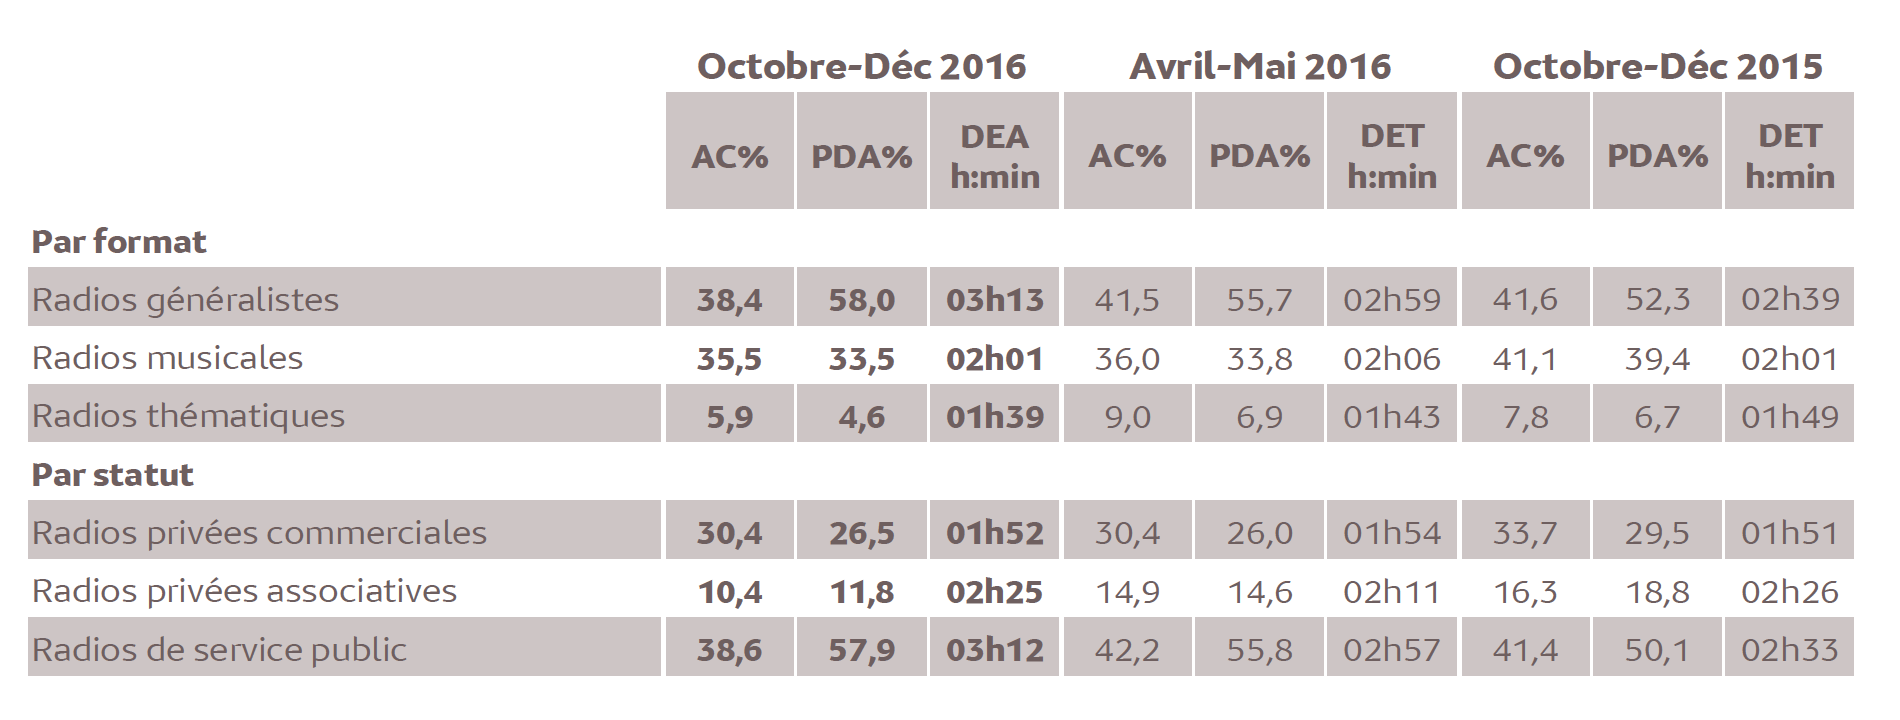 Source : Médiamétrie - Métridom Guyane Octobre-Décembre 2016 - 13 ans et plus - Copyright Médiamétrie - Tous droits réservés